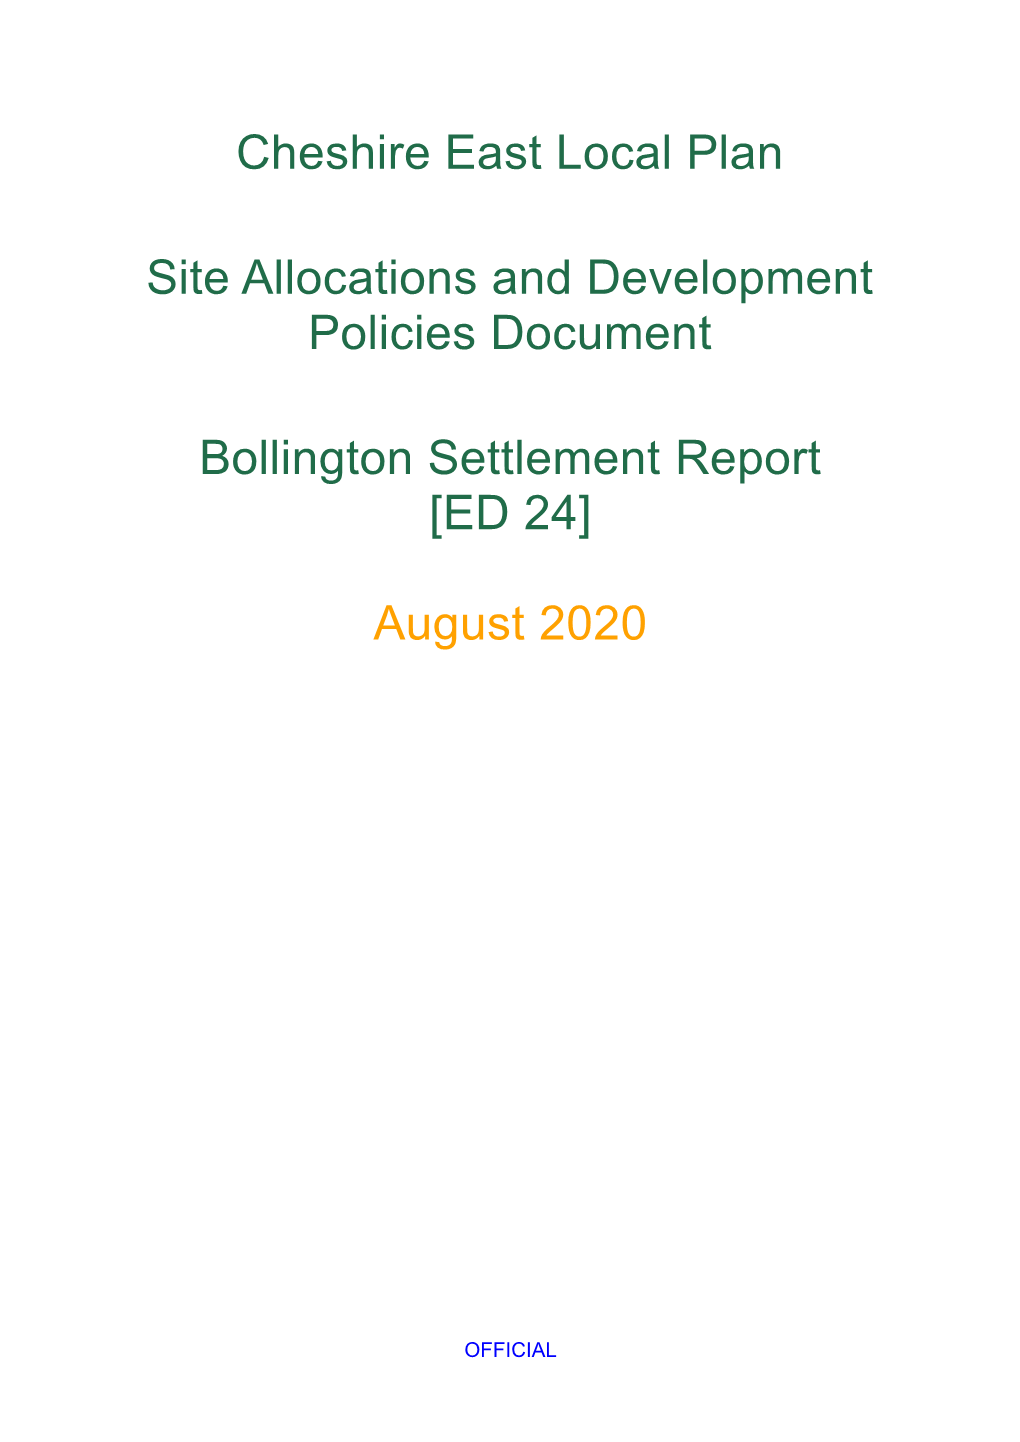 Bollington Settlement Report [ED 24]